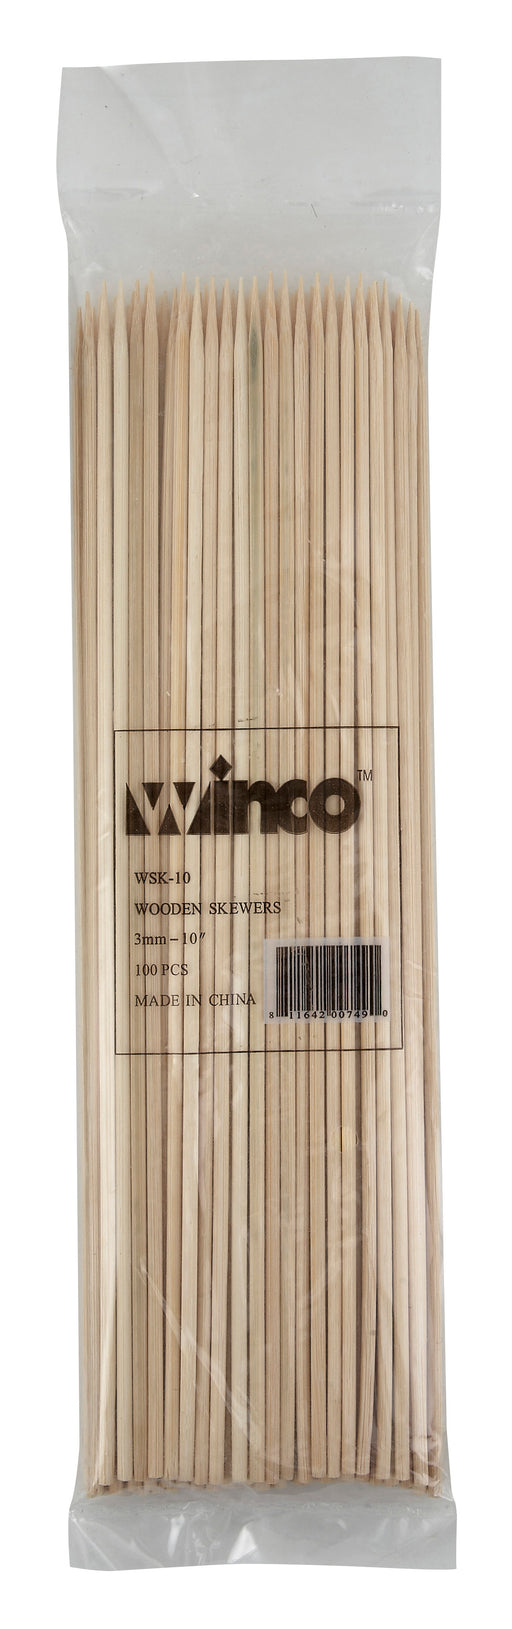 Winco WSK-10